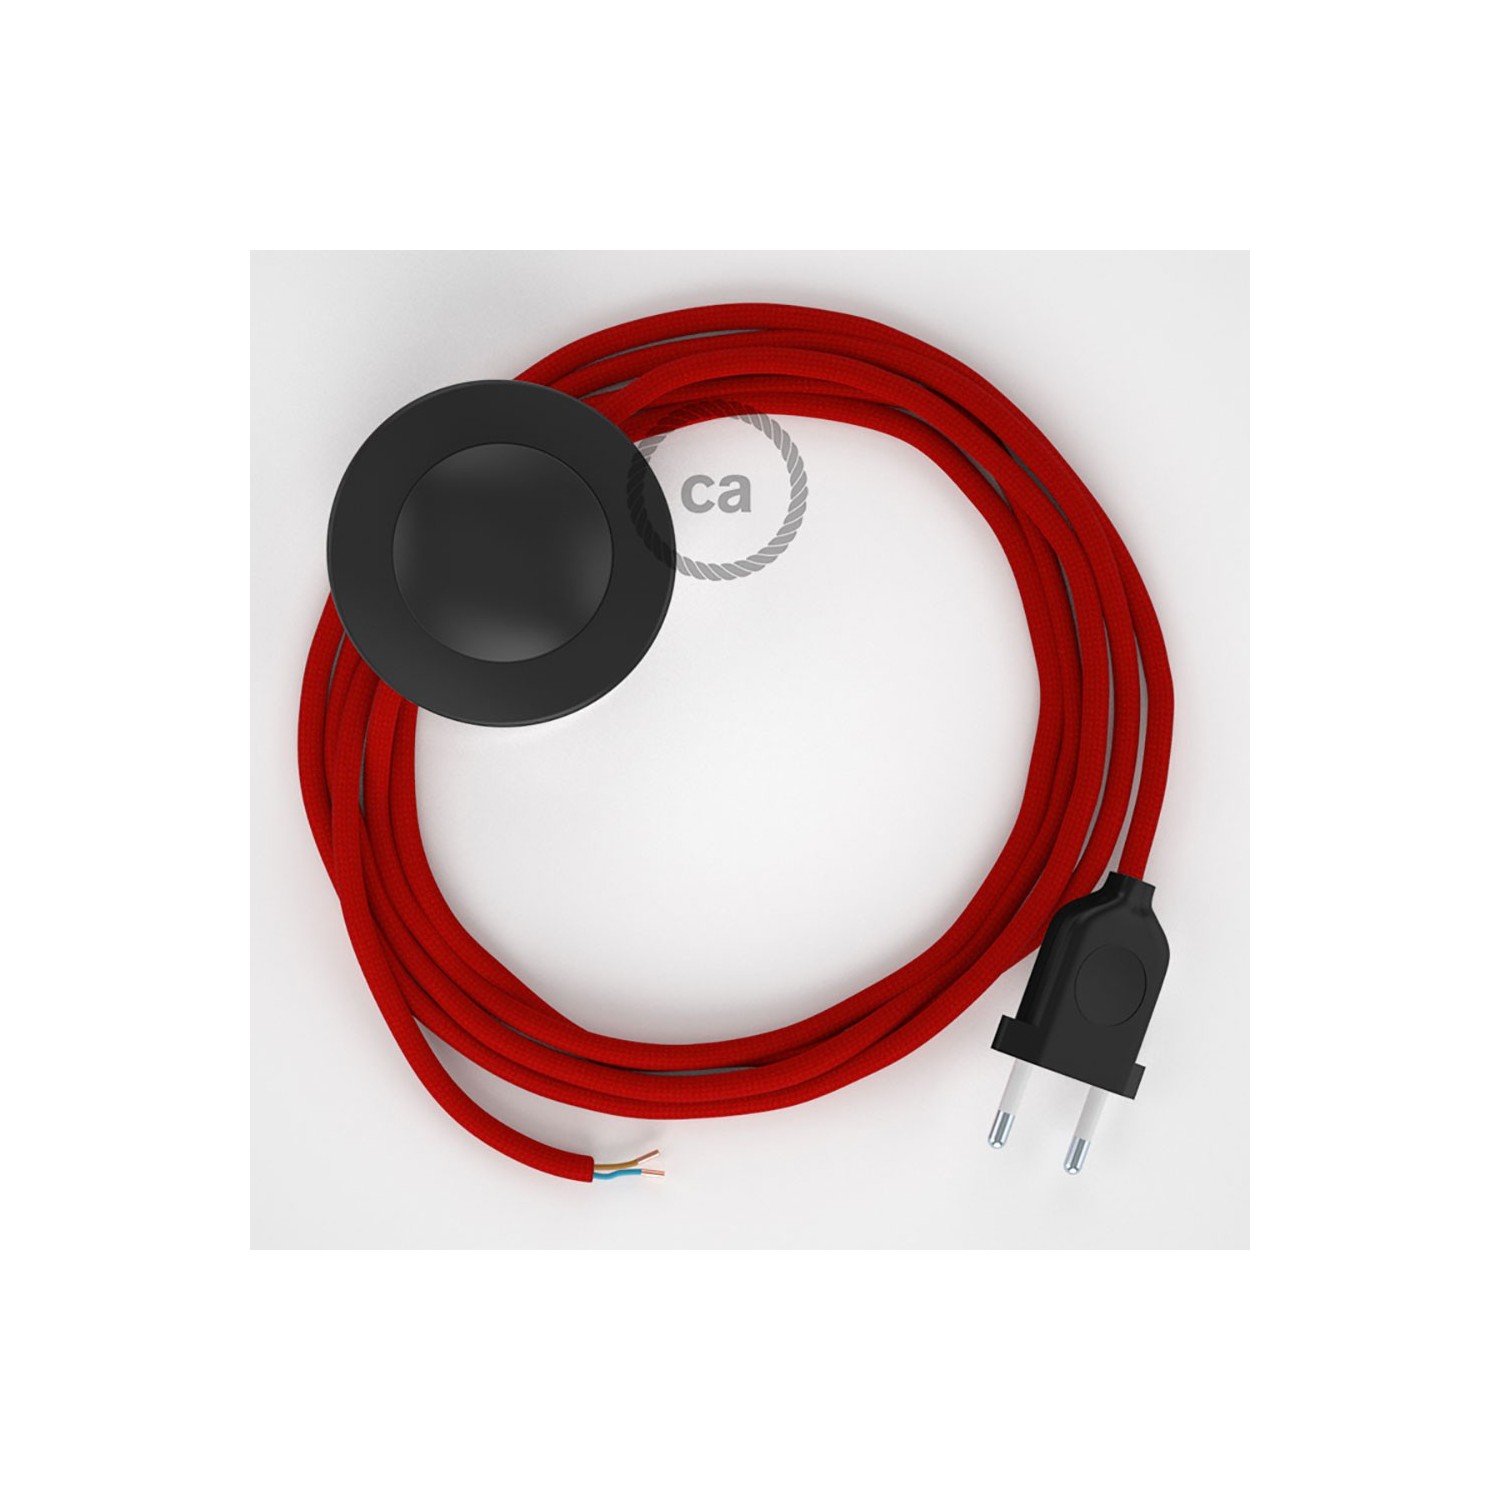 Cordon pour lampadaire, câble RM09 Effet Soie Rouge 3 m. Choisissez la couleur de la fiche et de l'interrupteur!